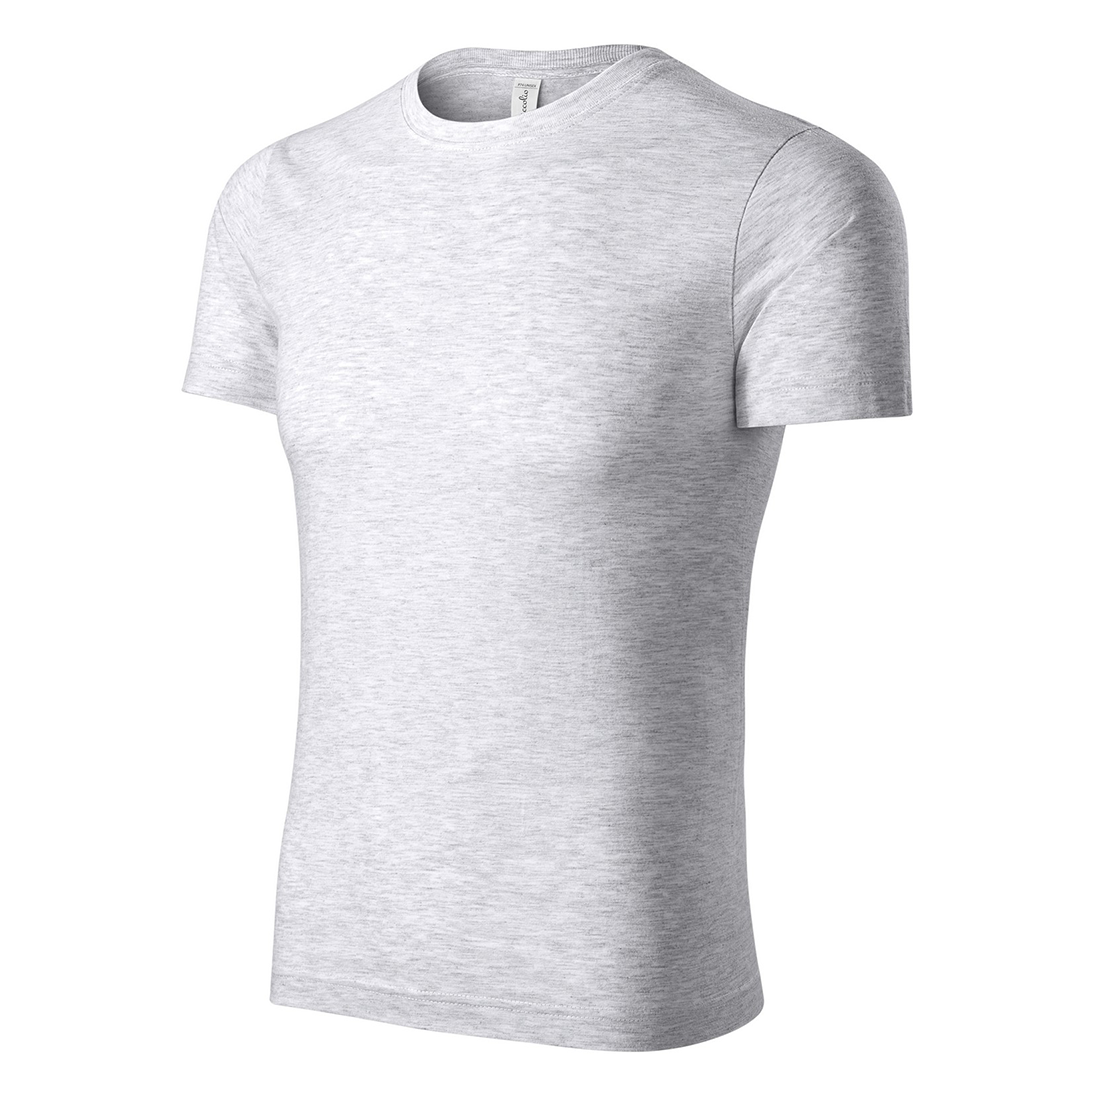 PEAK Unisex T-shirt - Safetywear